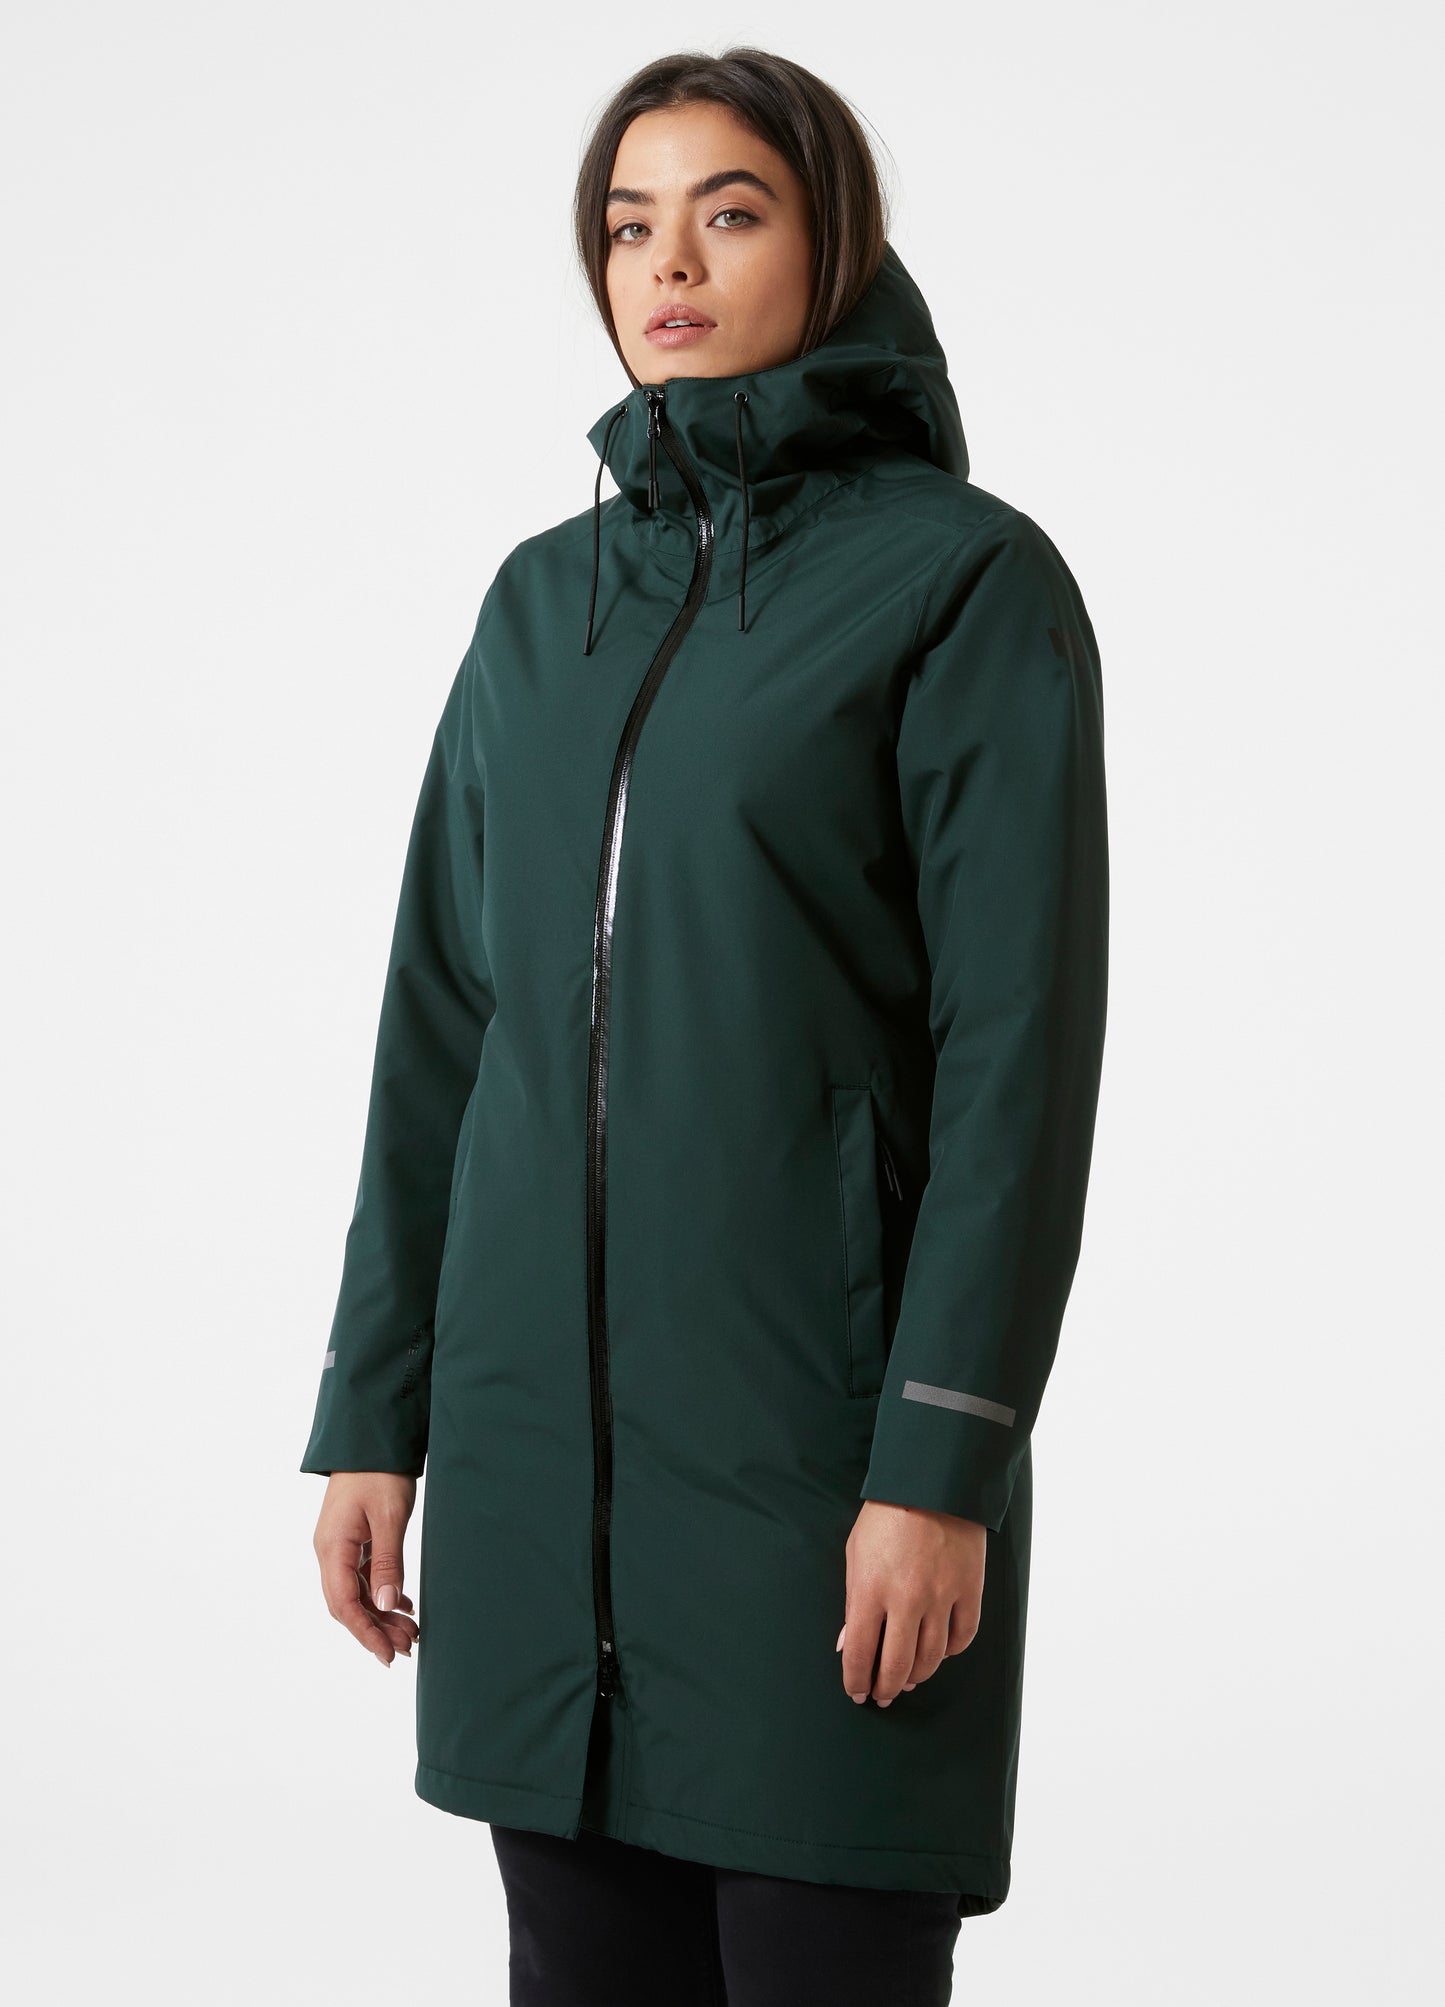 Women's ASPIRE Insulated raincoat